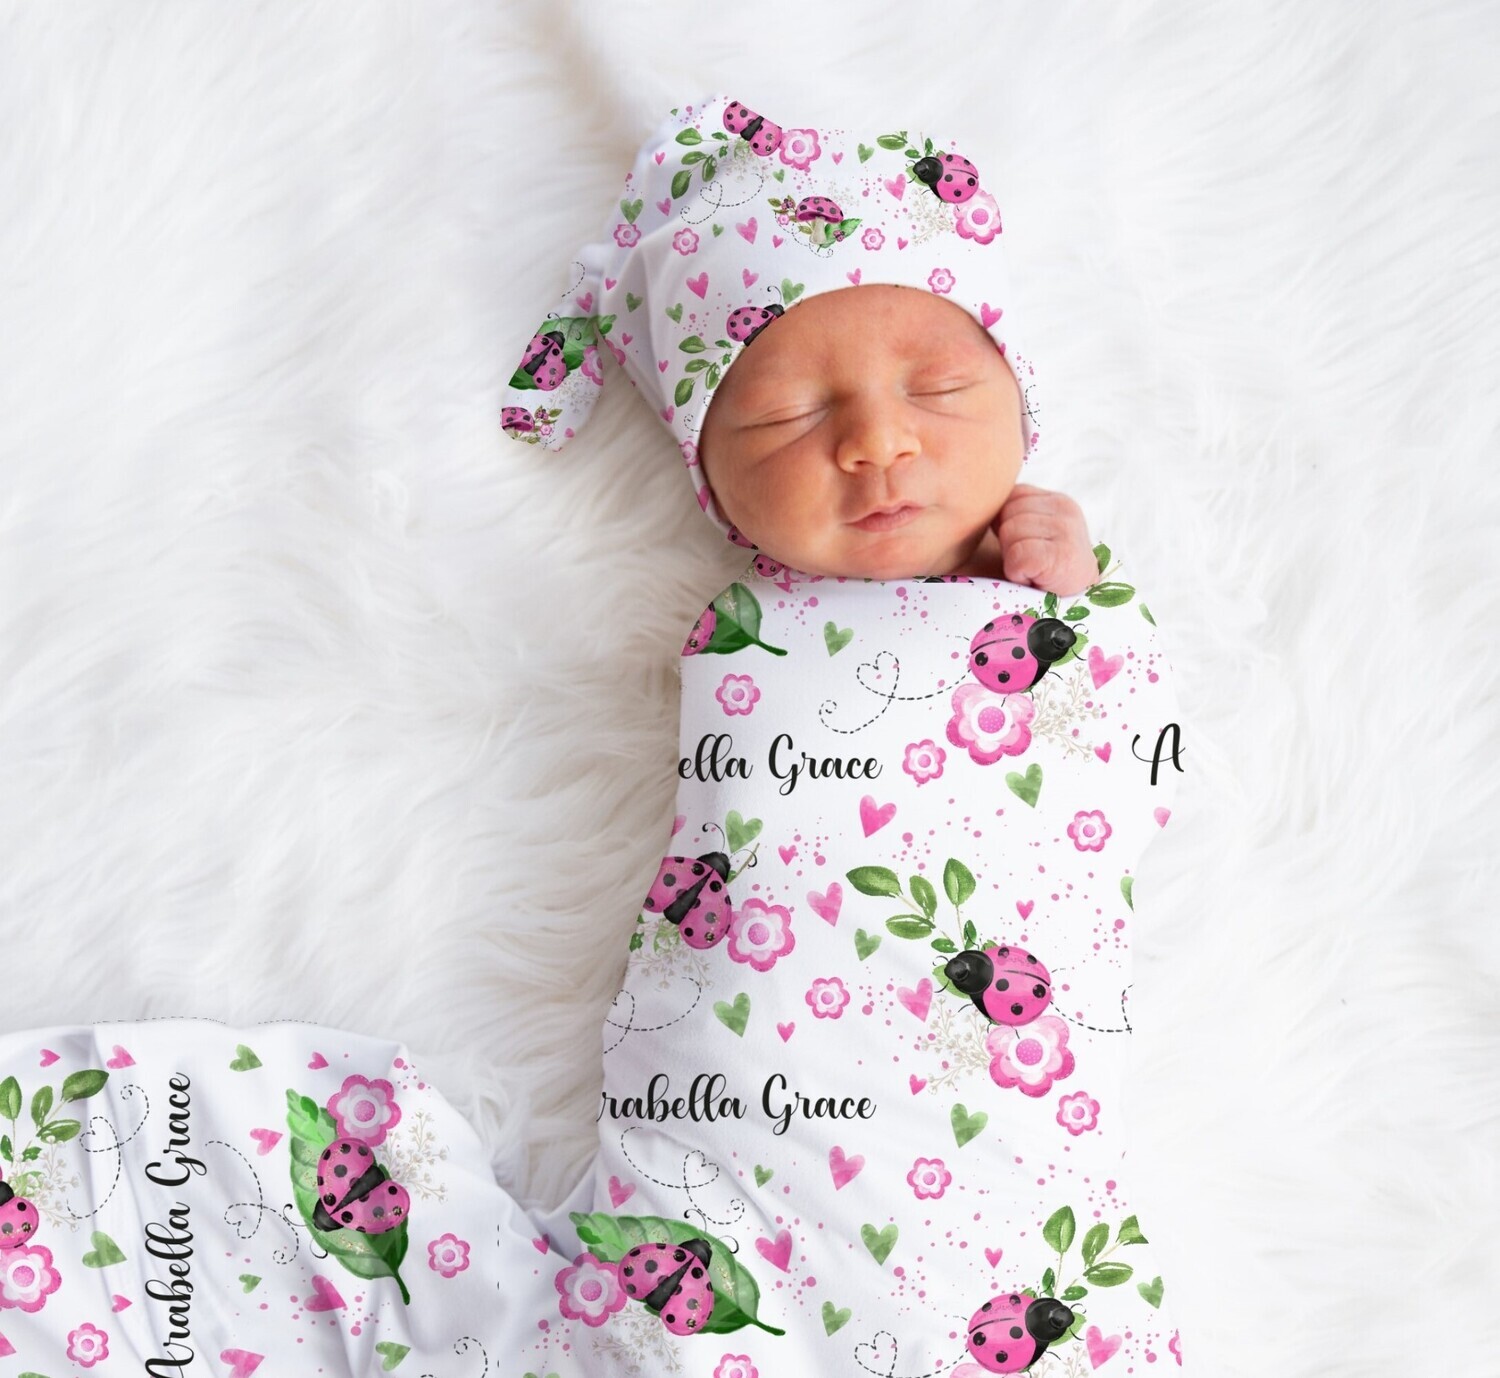 Ladybug Baby Girl Swaddle Blanket Newborn Swaddle Blanket Knotted Baby Cap Headband Baby Gift Hospital Photo Newborn Photo Newborn Blanket